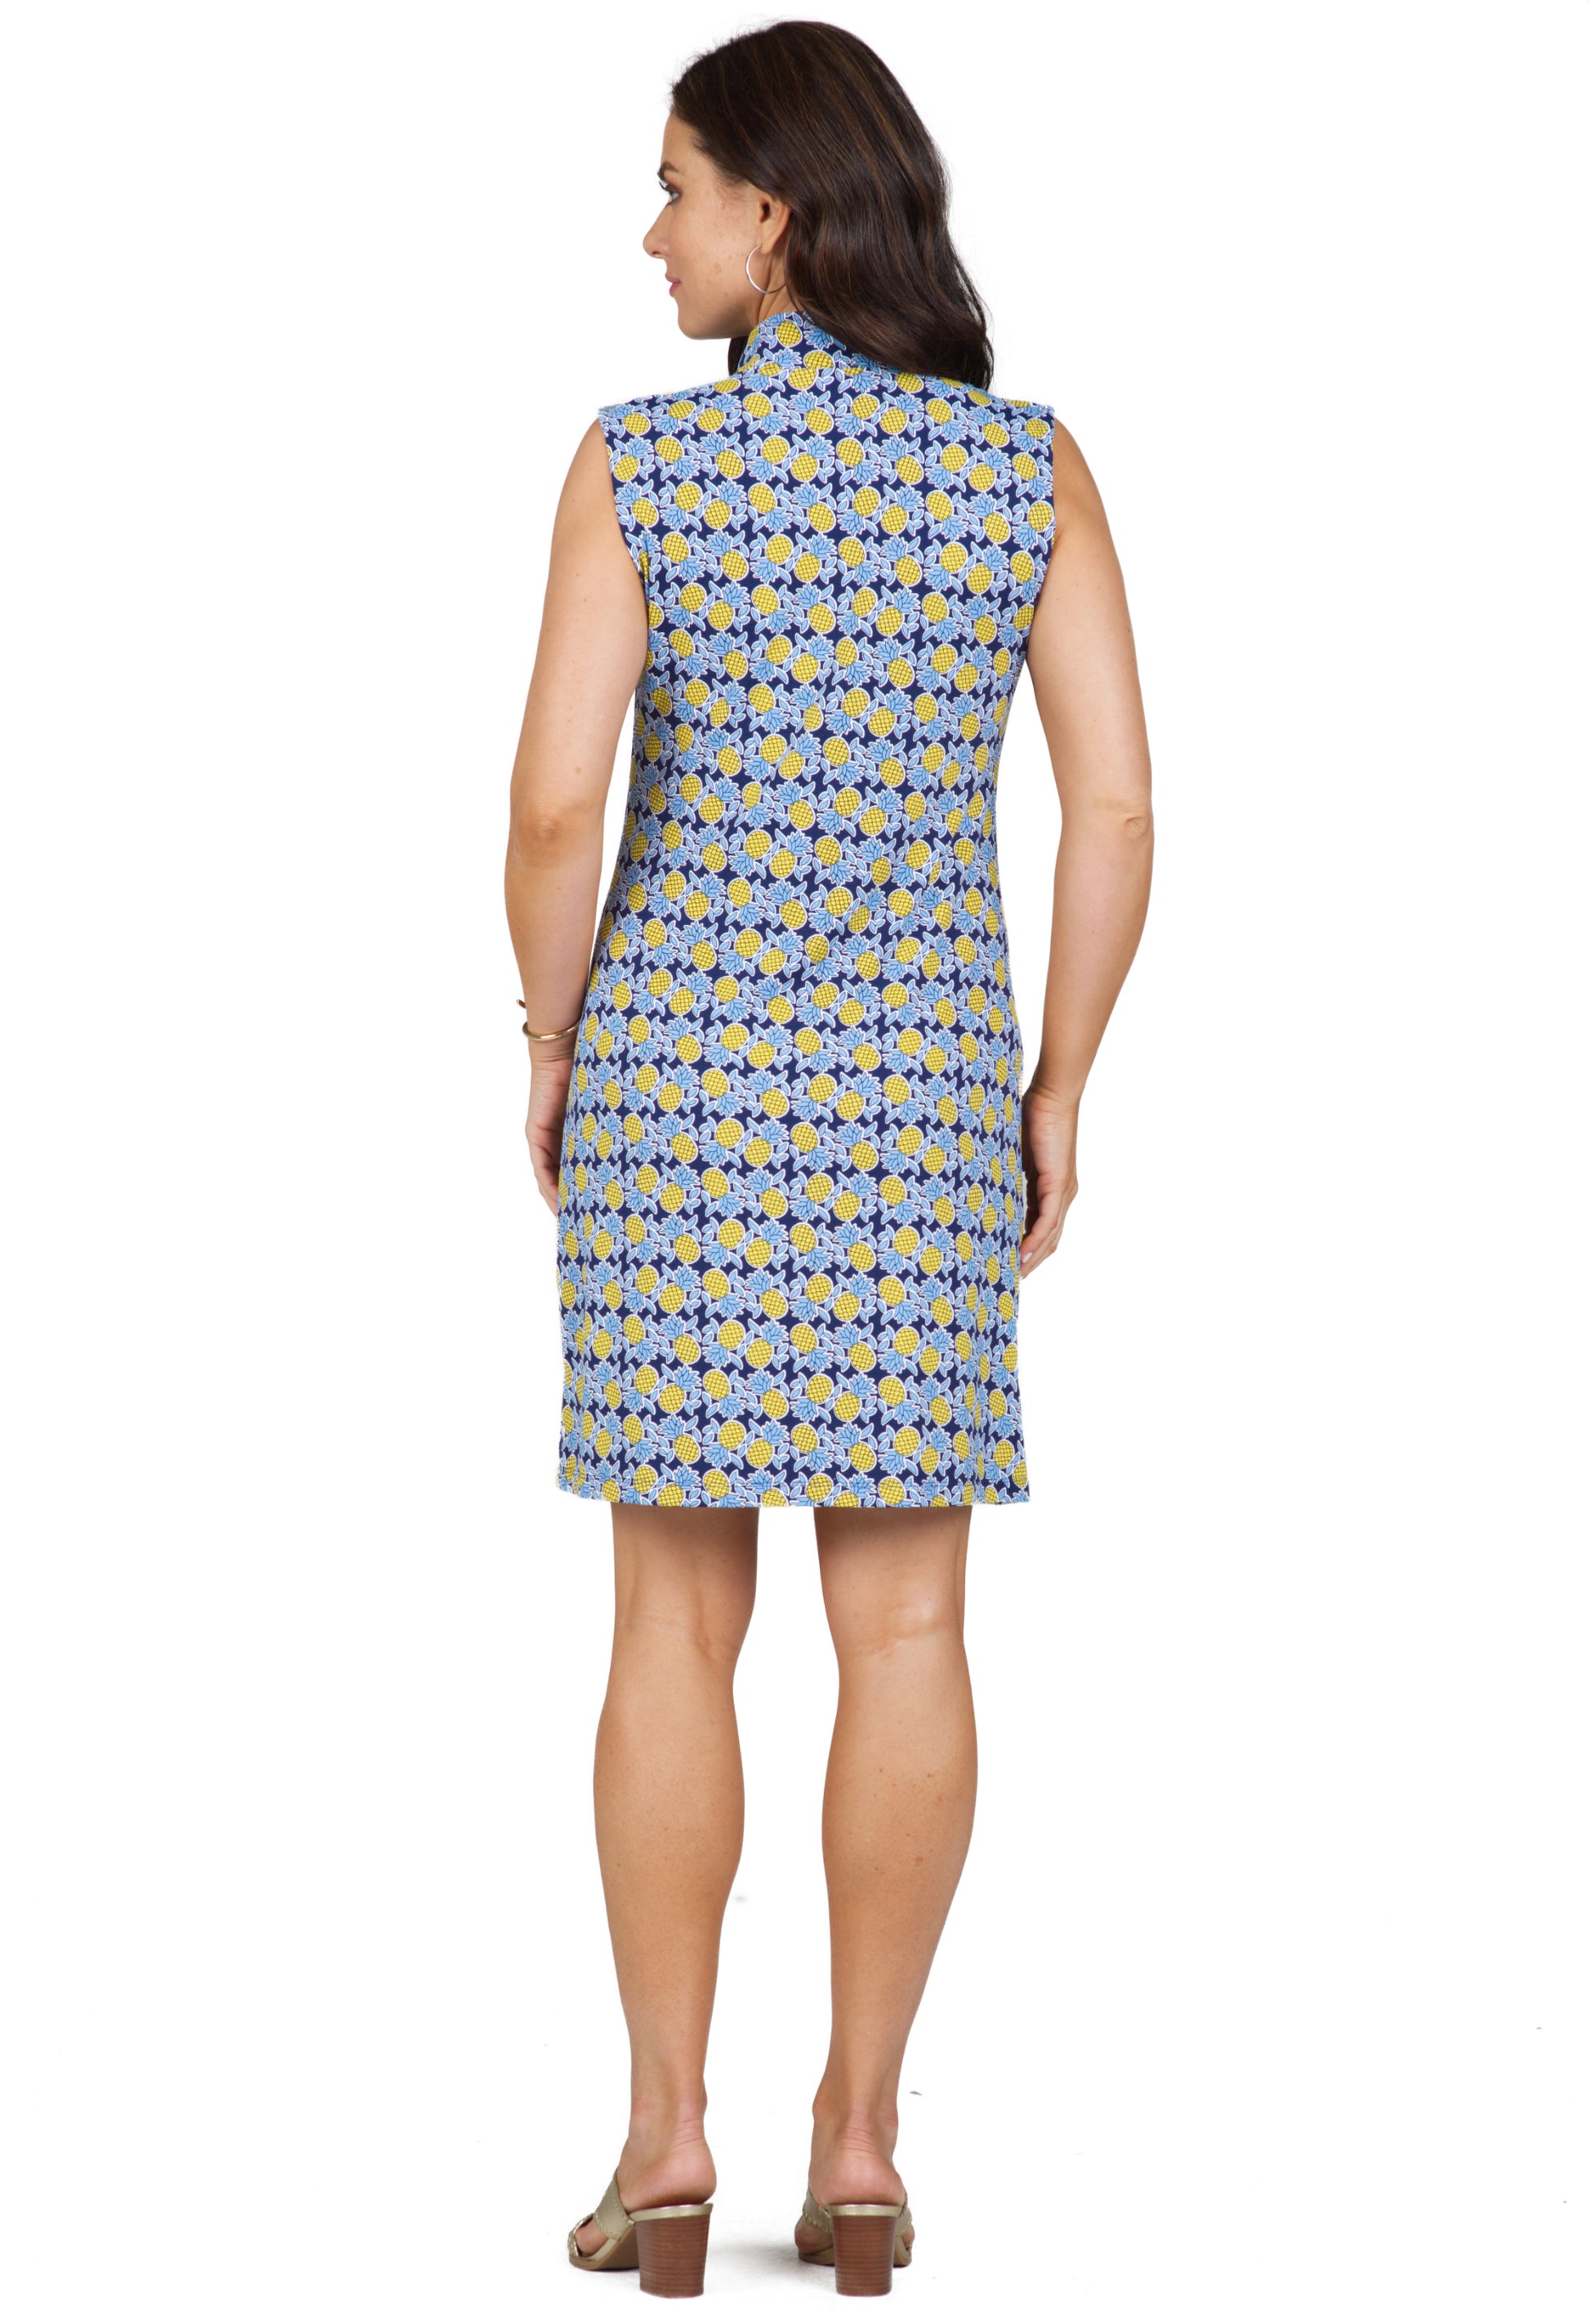 IBKÜL - Chantal Print Sleeveless Mock Dress – 58540 - Color: Navy/Peri